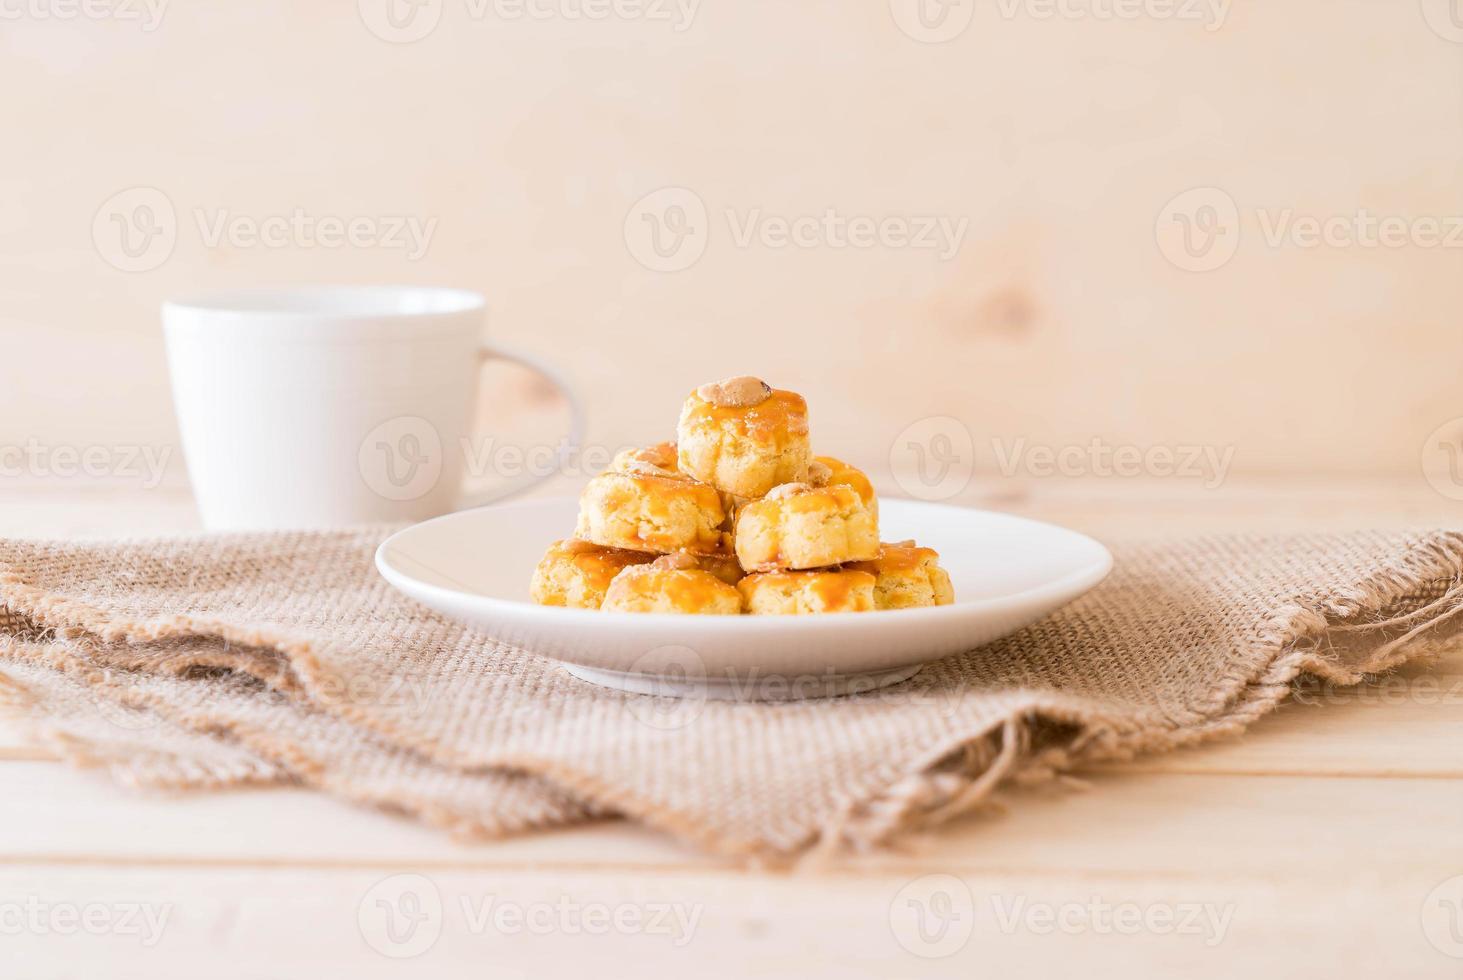 biscoitos durian em prato branco - sobremesa foto